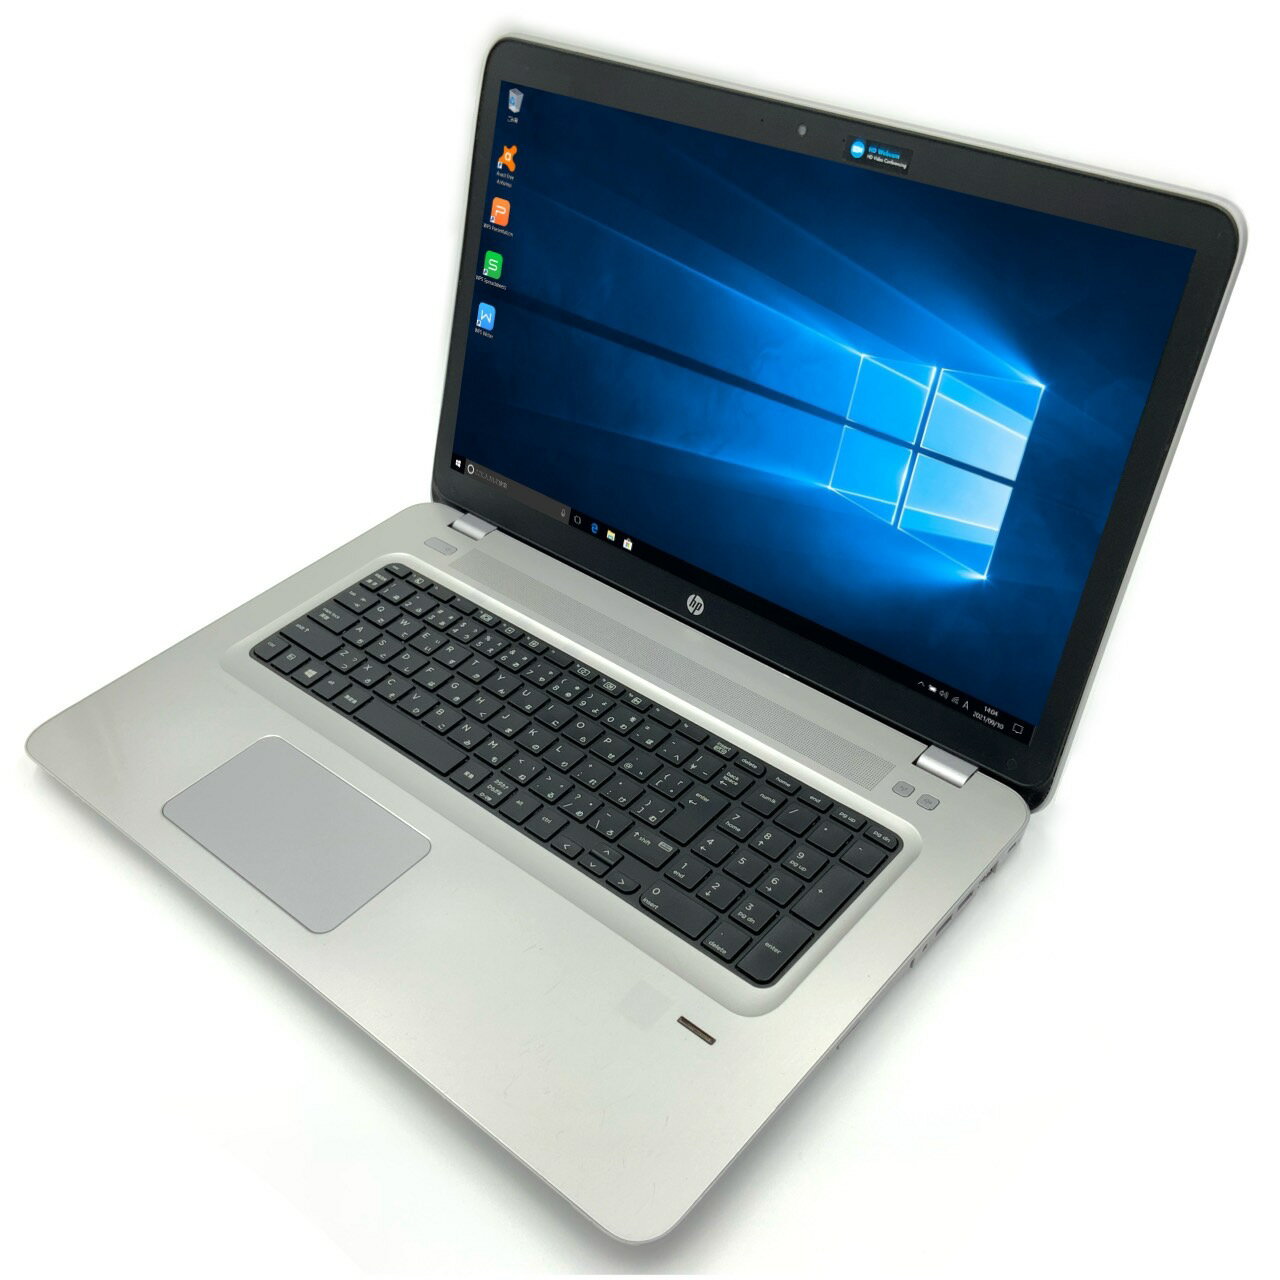 HP ProBook 470 G4 Core i5 32GB 新品HDD2TB スーパーマルチ 無線LAN Windows10 64bit WPS Office 17.3インチ カメラ 中古パソコン ノートパソコン Notebook 【中古】 2